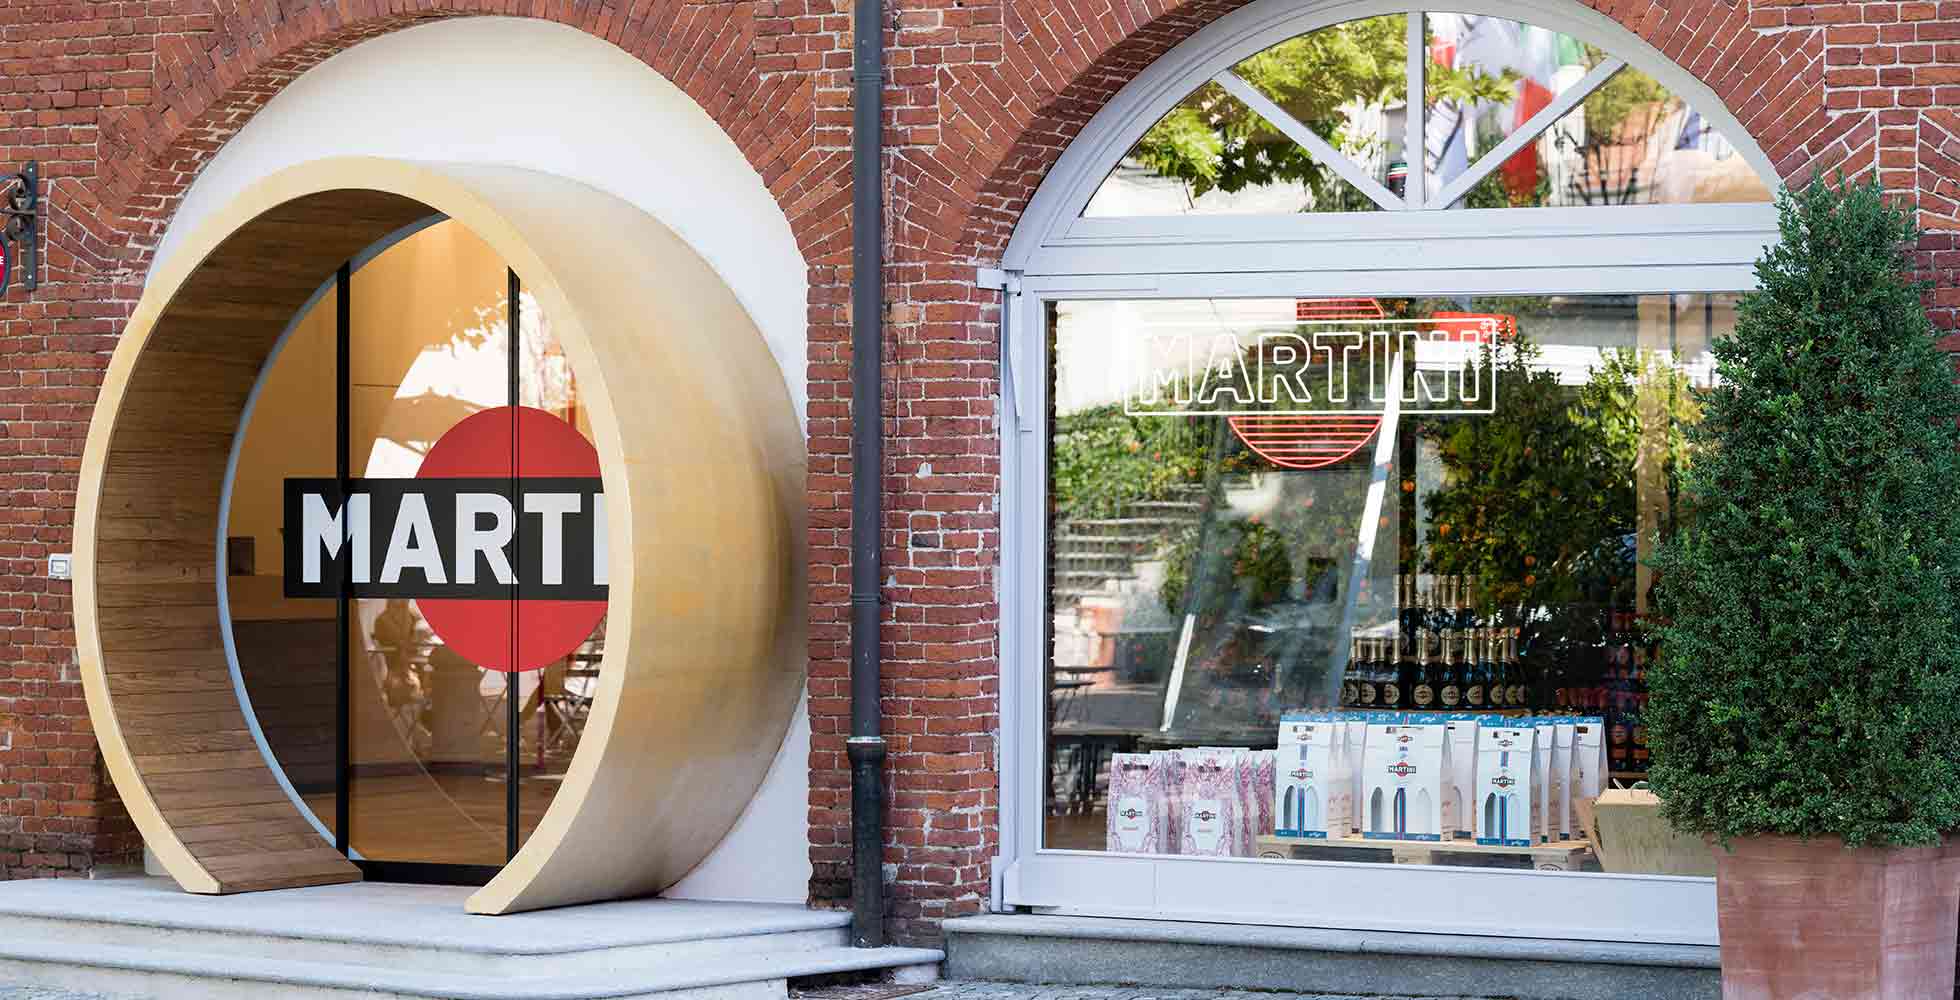 Promo Appareil à Raclette 2 Personnes Arthur Marti chez Intermarché